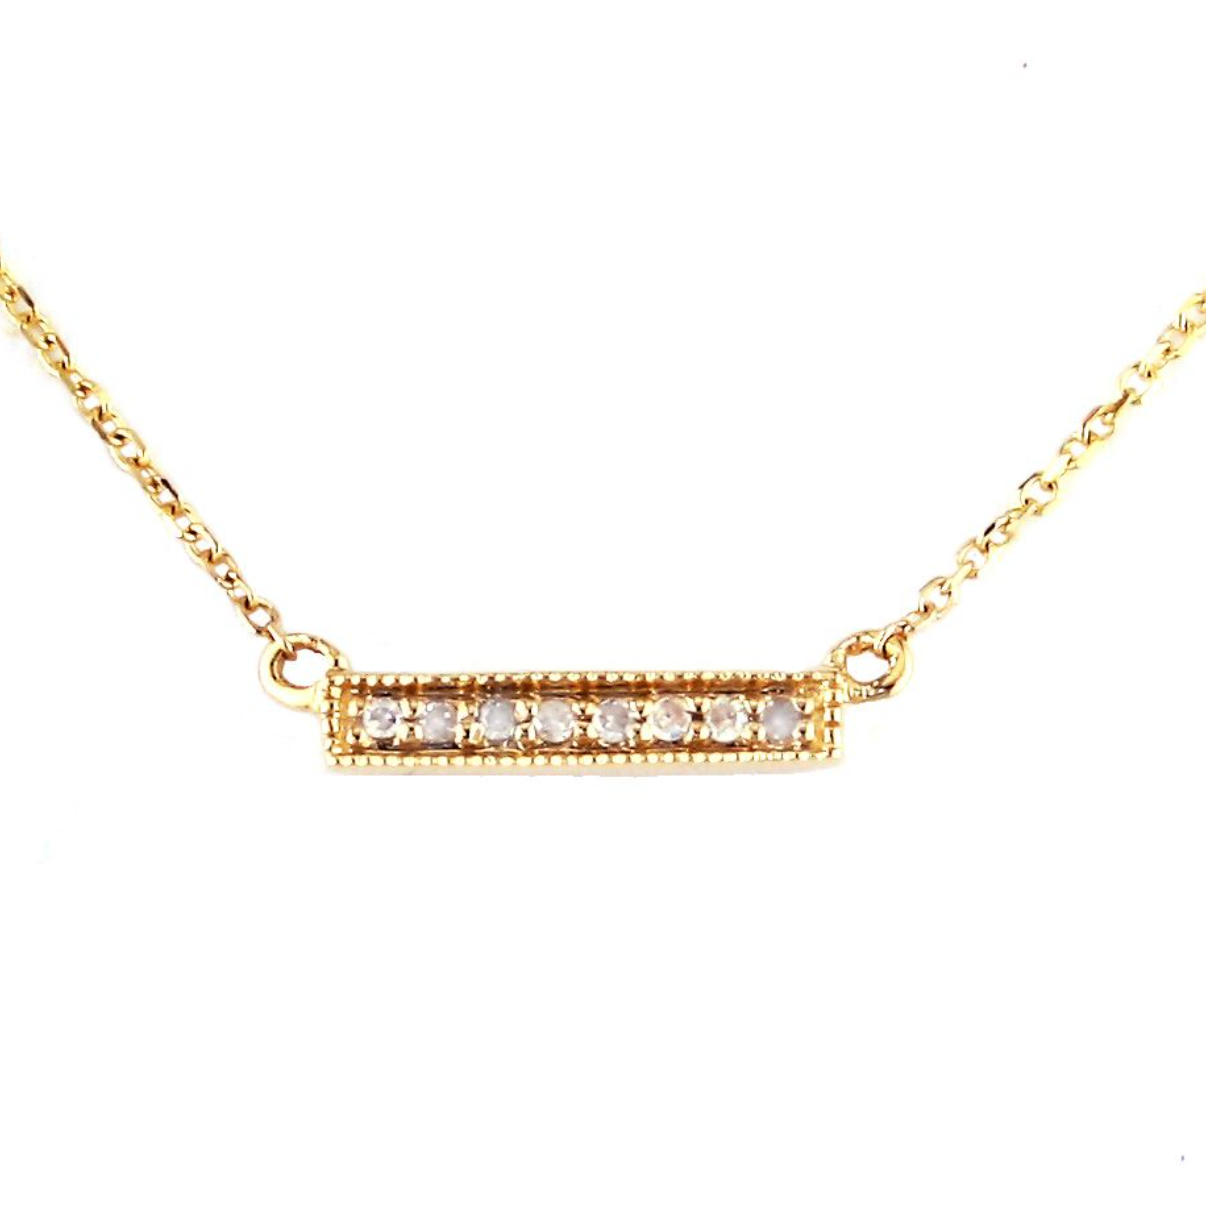 Necklace With Petite Diamond Bar. 18" - 14k